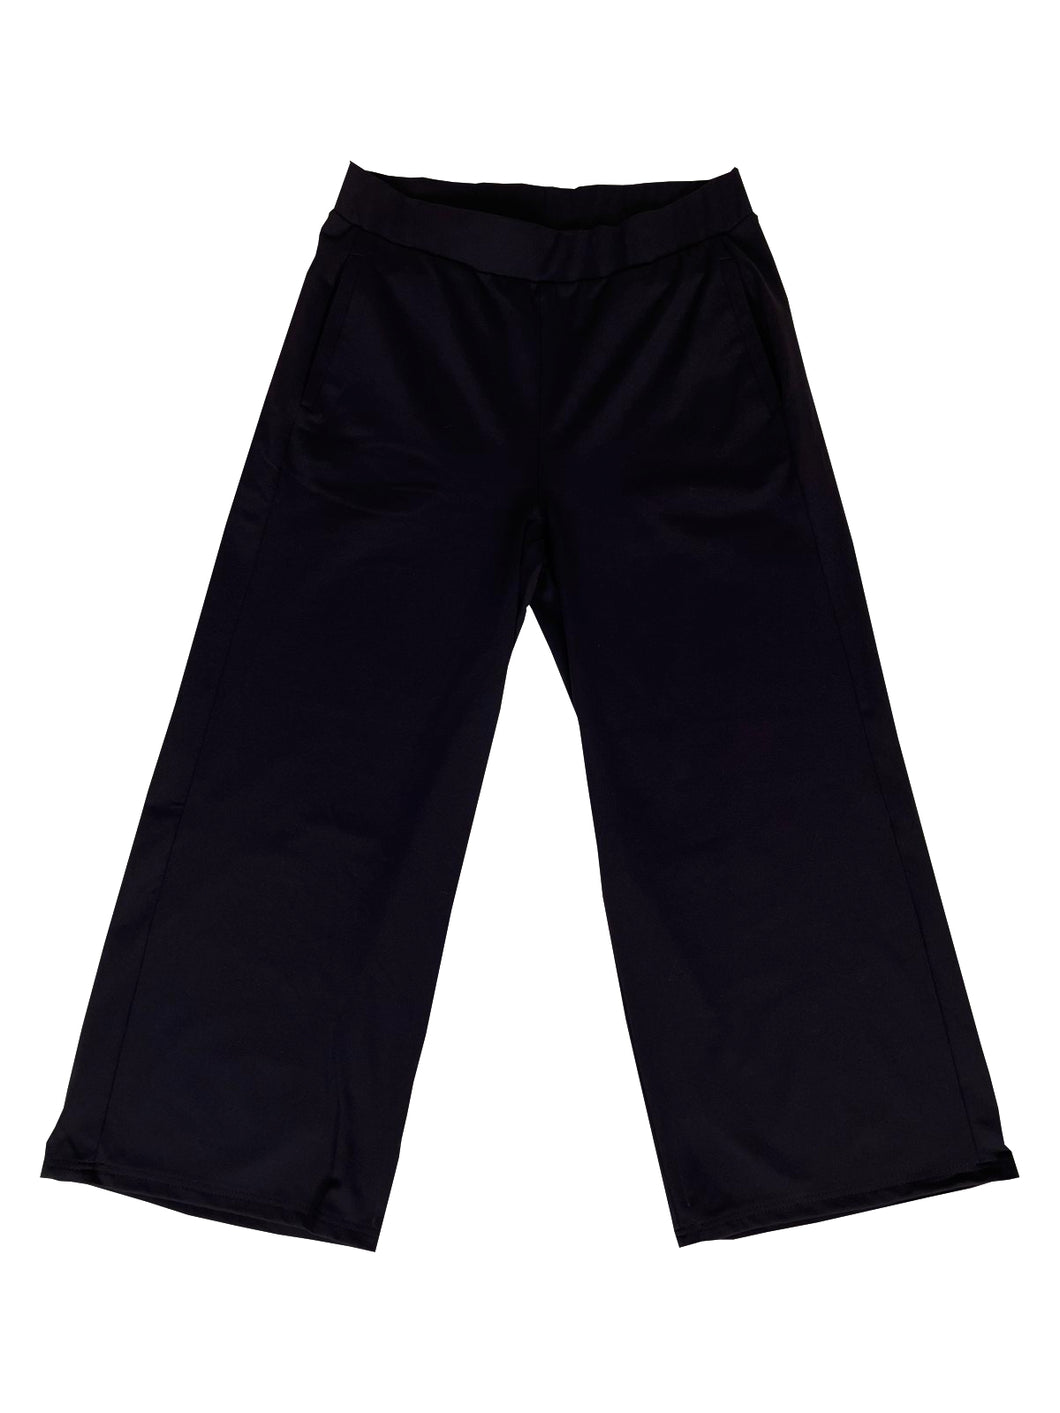 Broek Culotte Jeans Zwart met elastische band